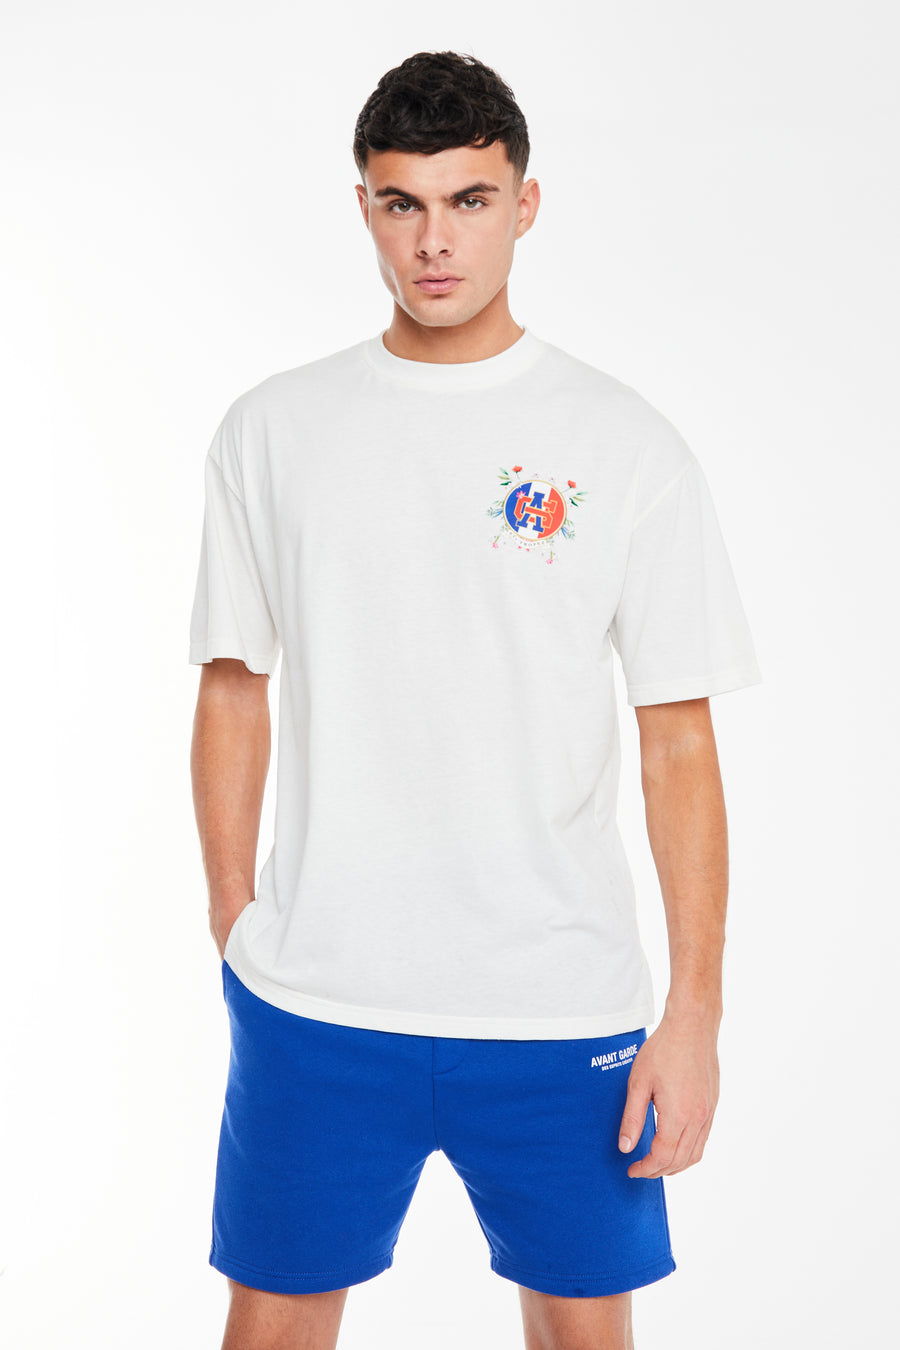 Off white t shirt for men with 'Avant Garde' logo on chest